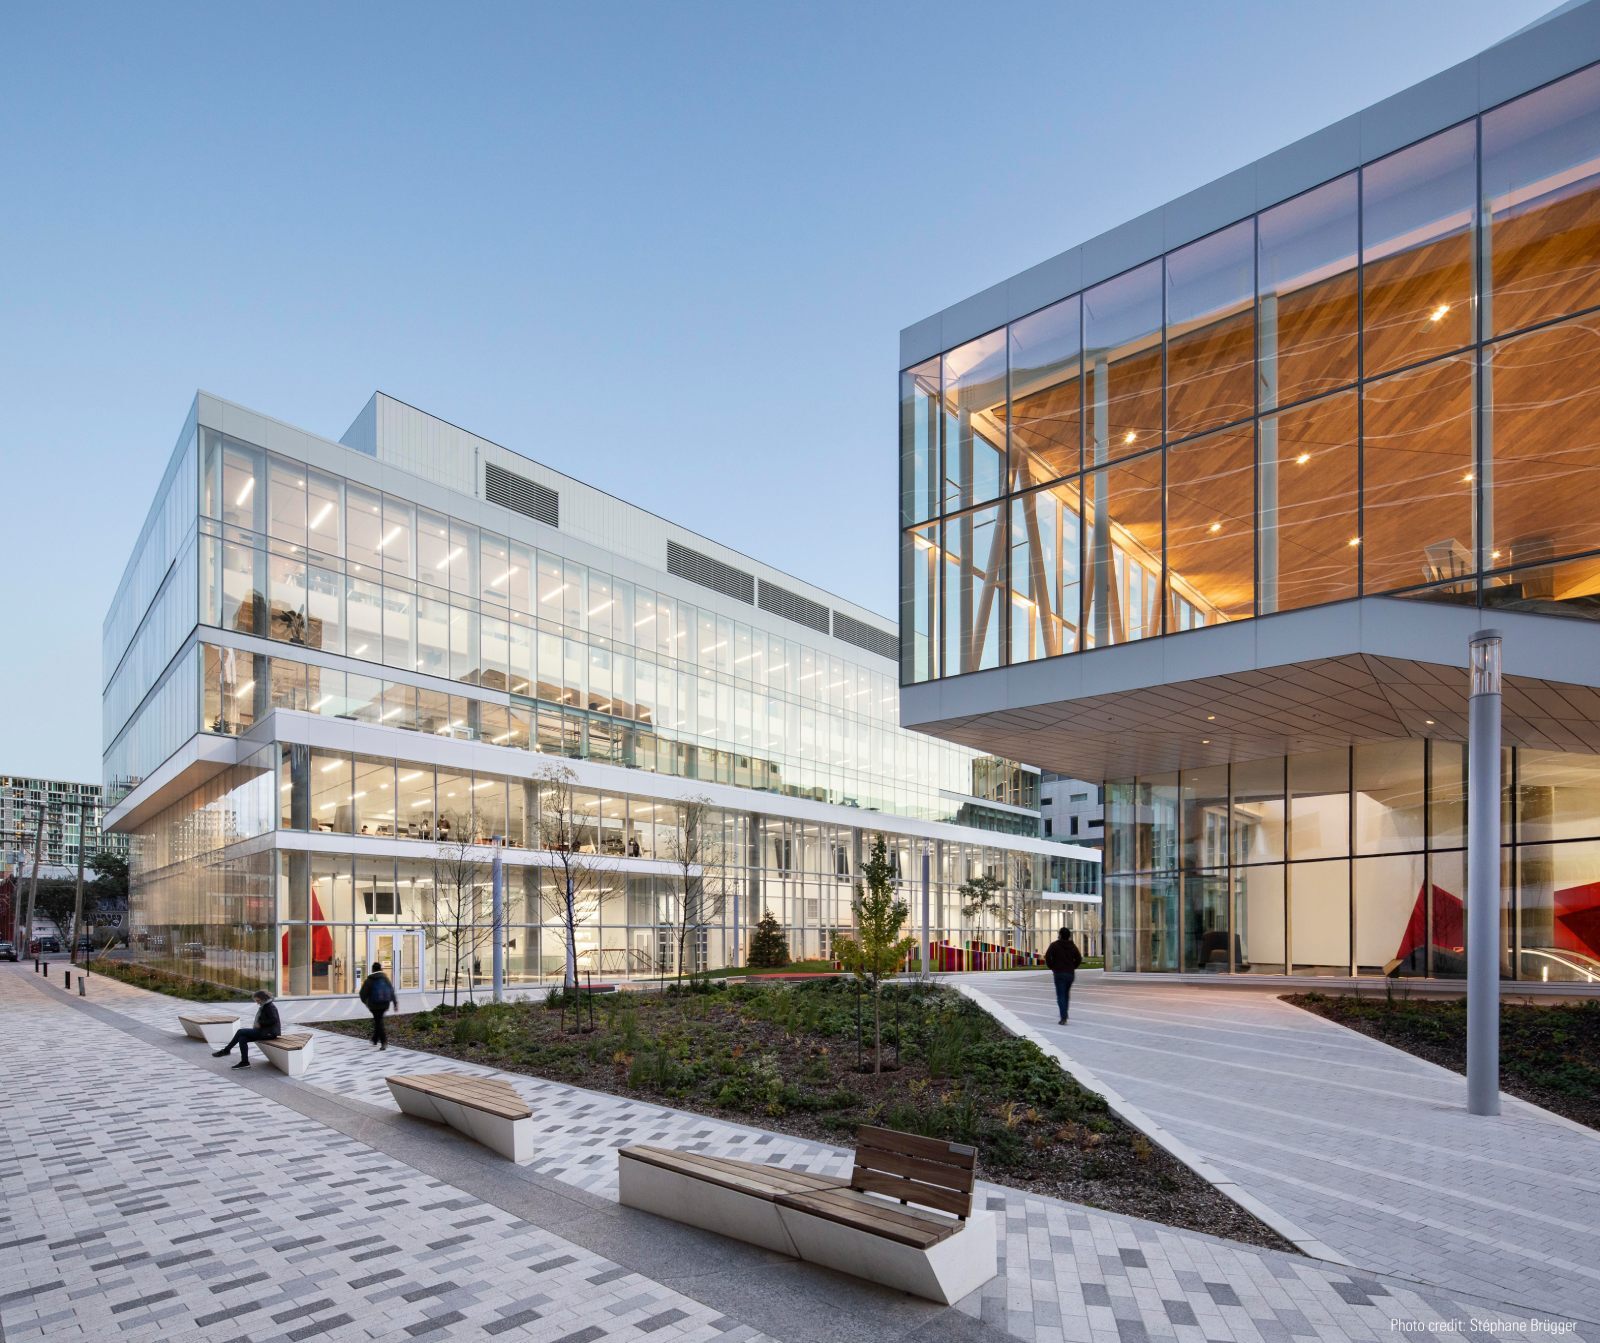 Bâtiment moderne de l'université technologique avec architecture en verre et personnes.